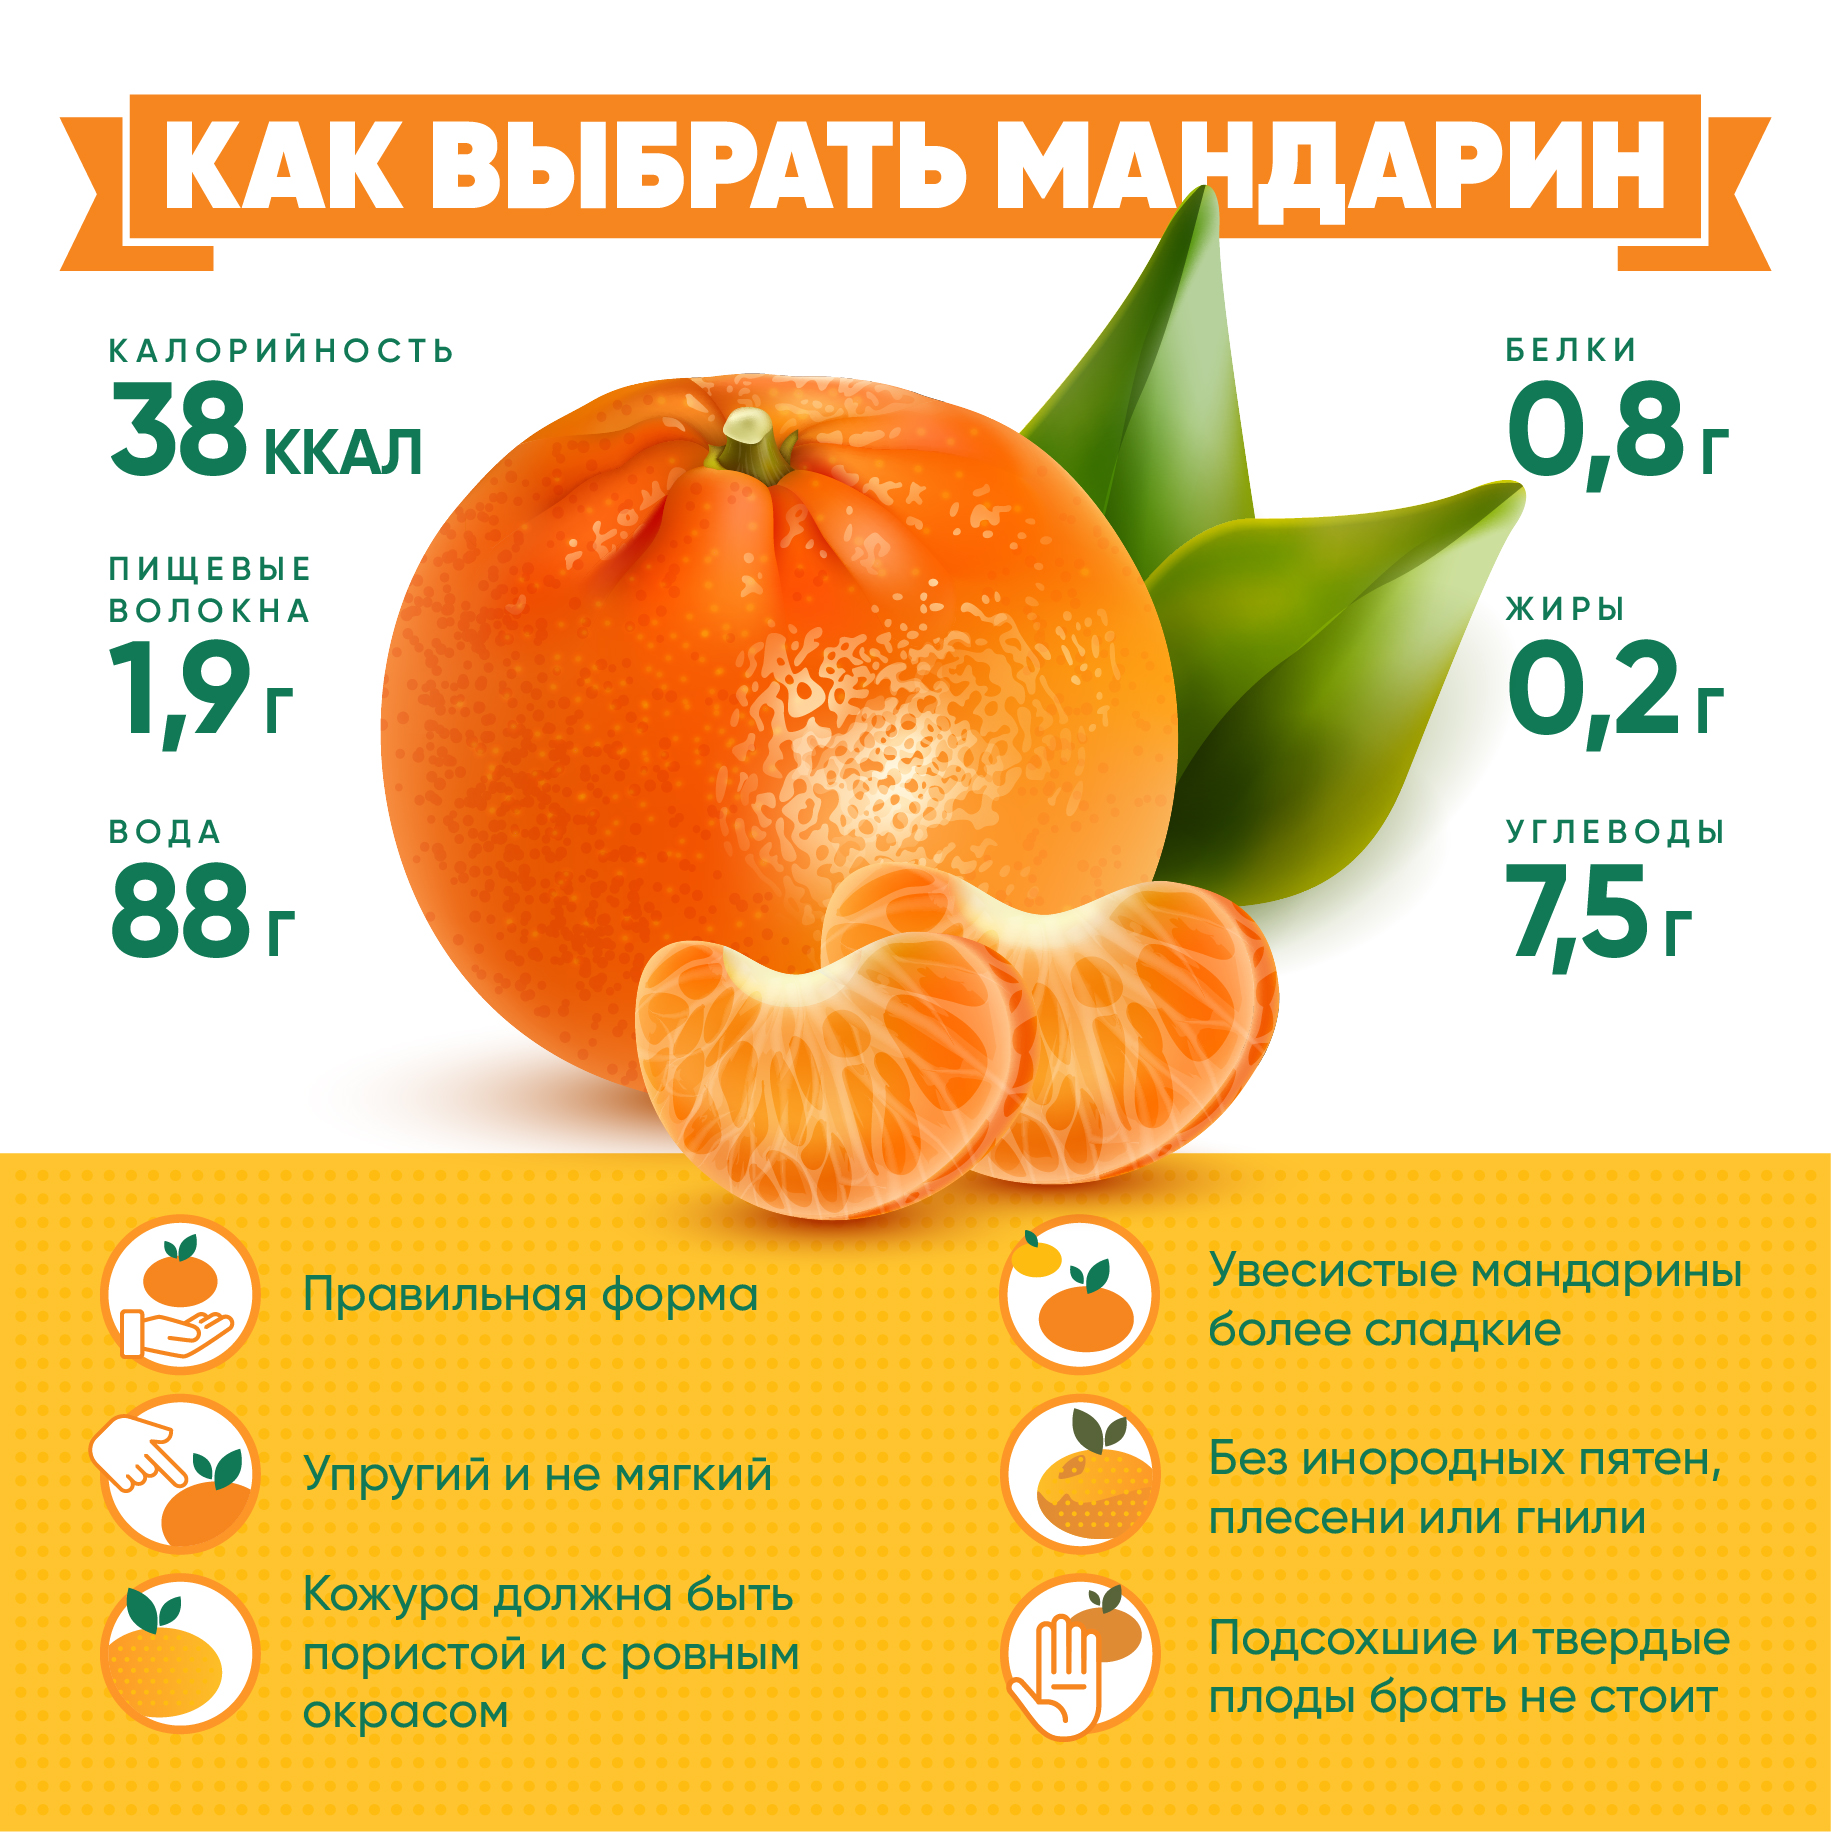 Средний вес мандарина без кожуры